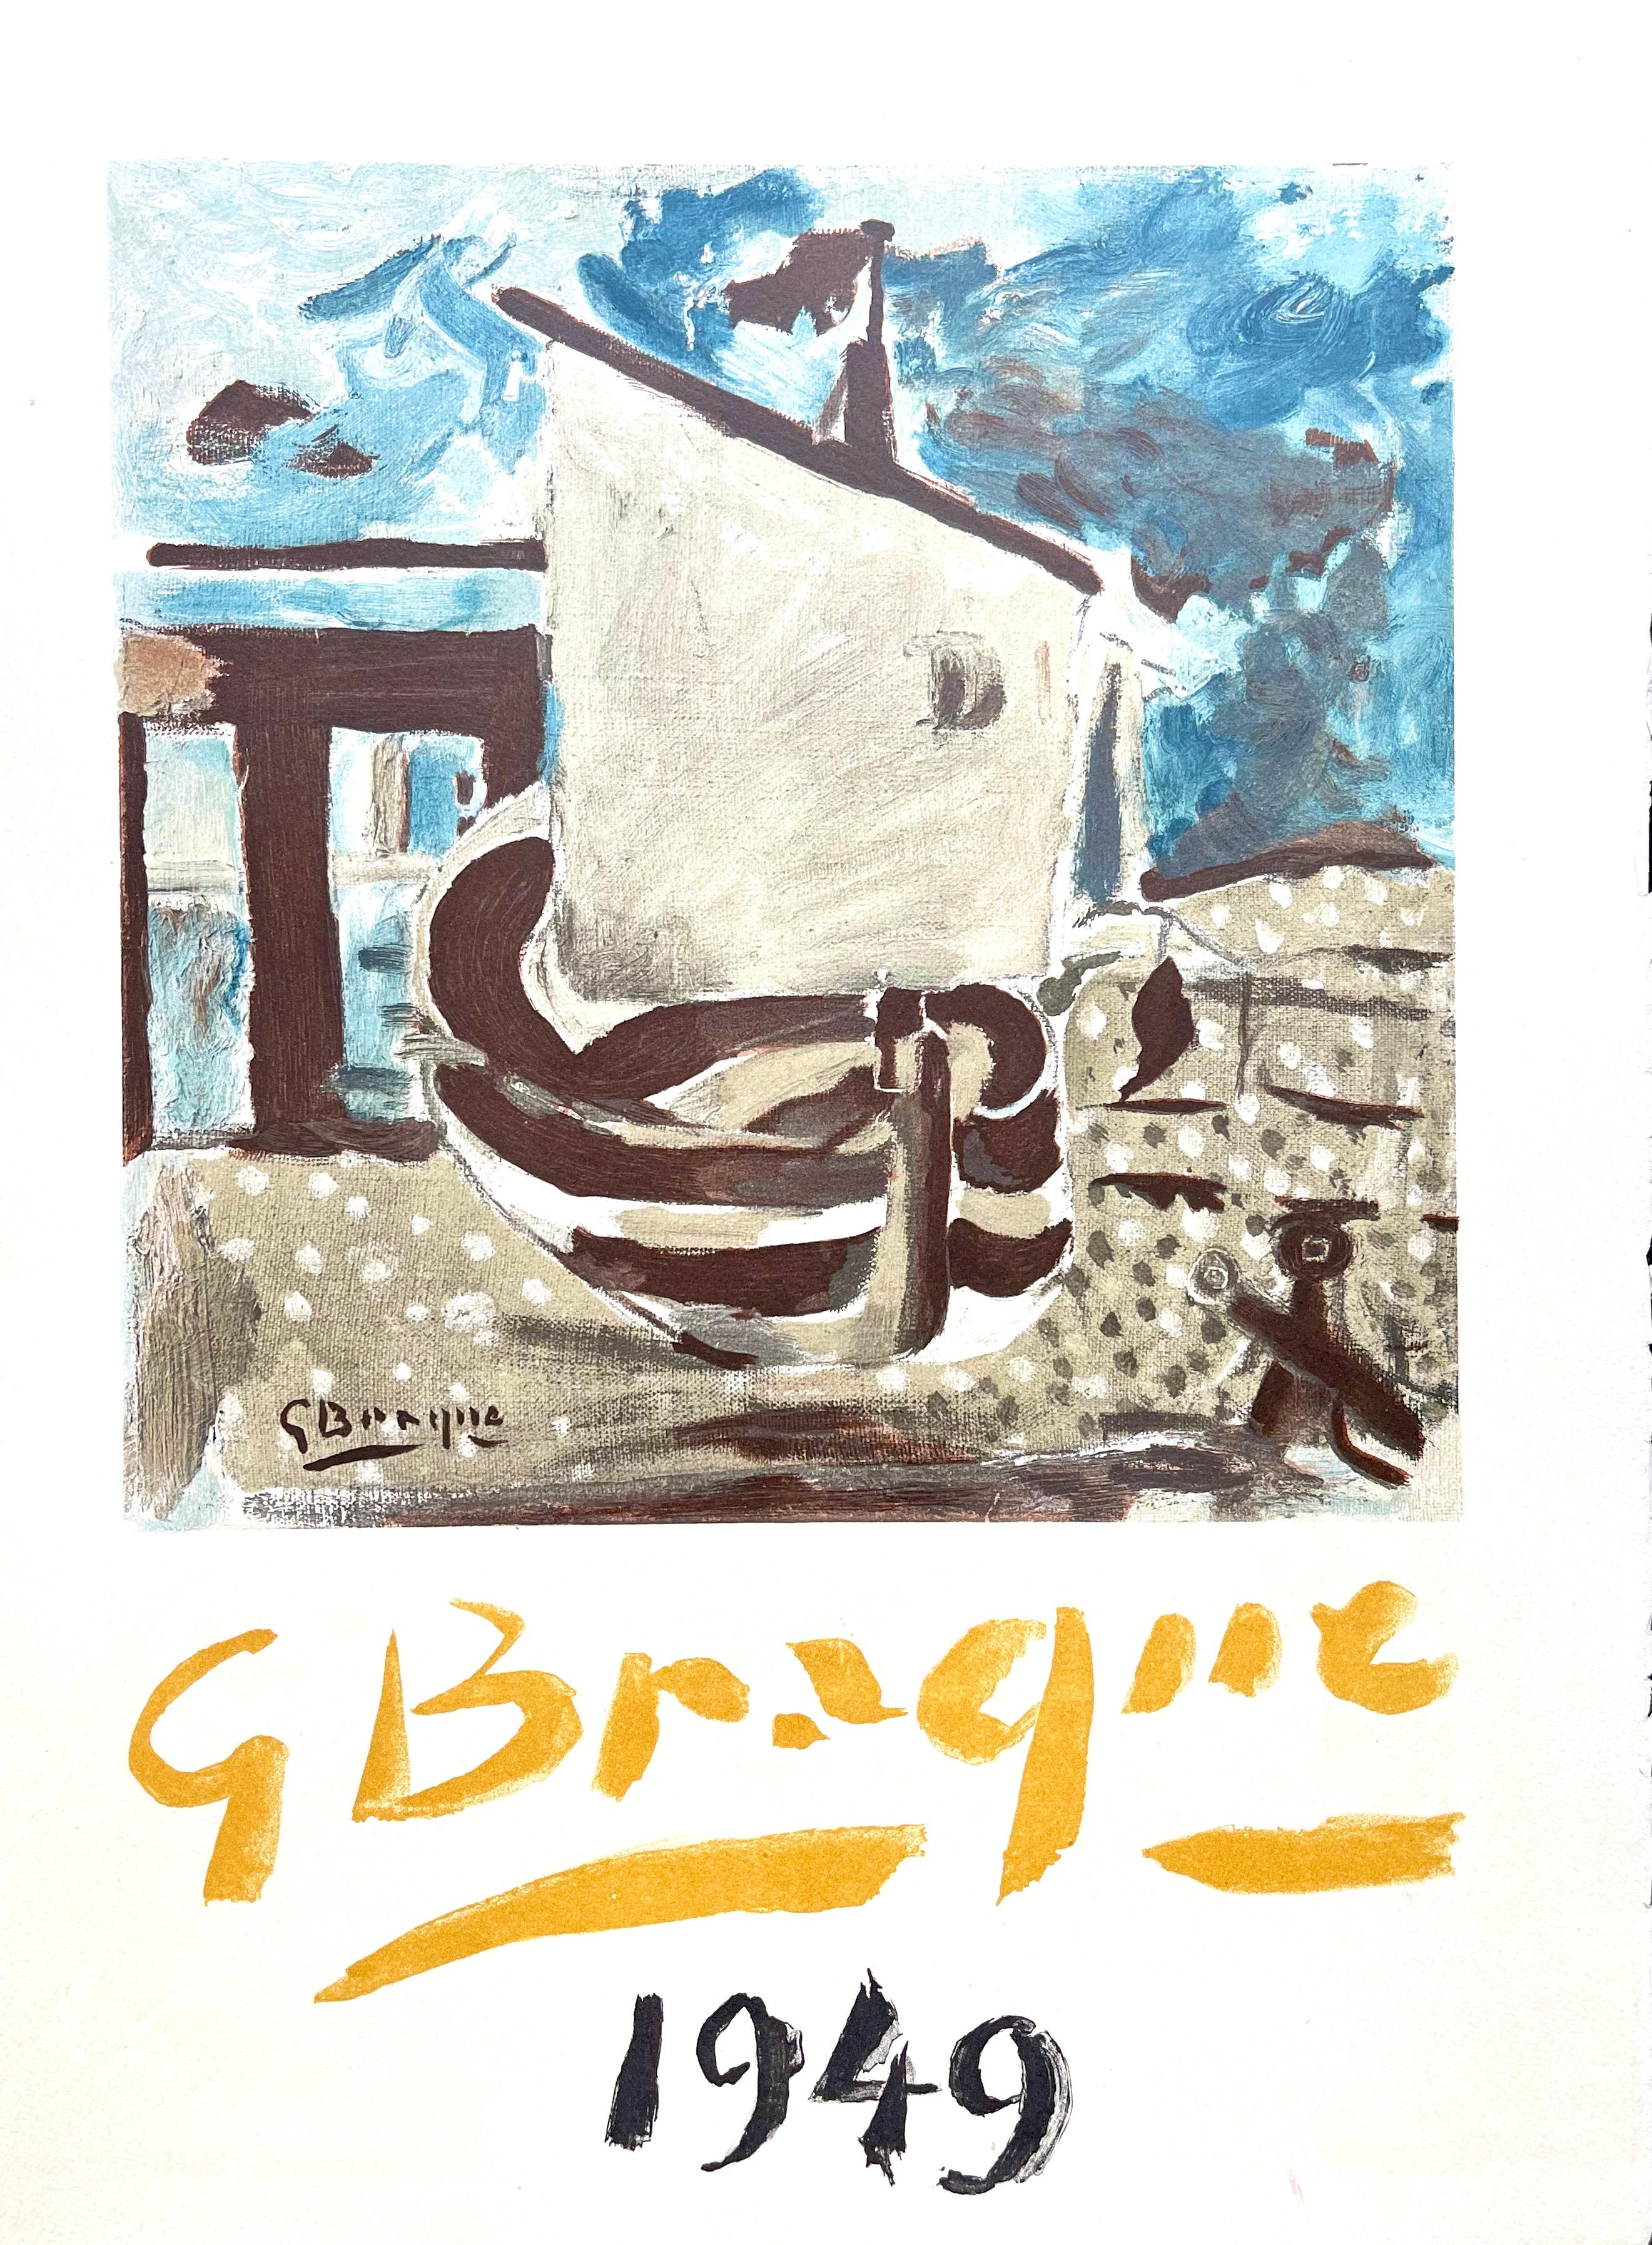 Das Schiff auf der Wiese, Ein abenteuerlicher Weg, Georges Braque